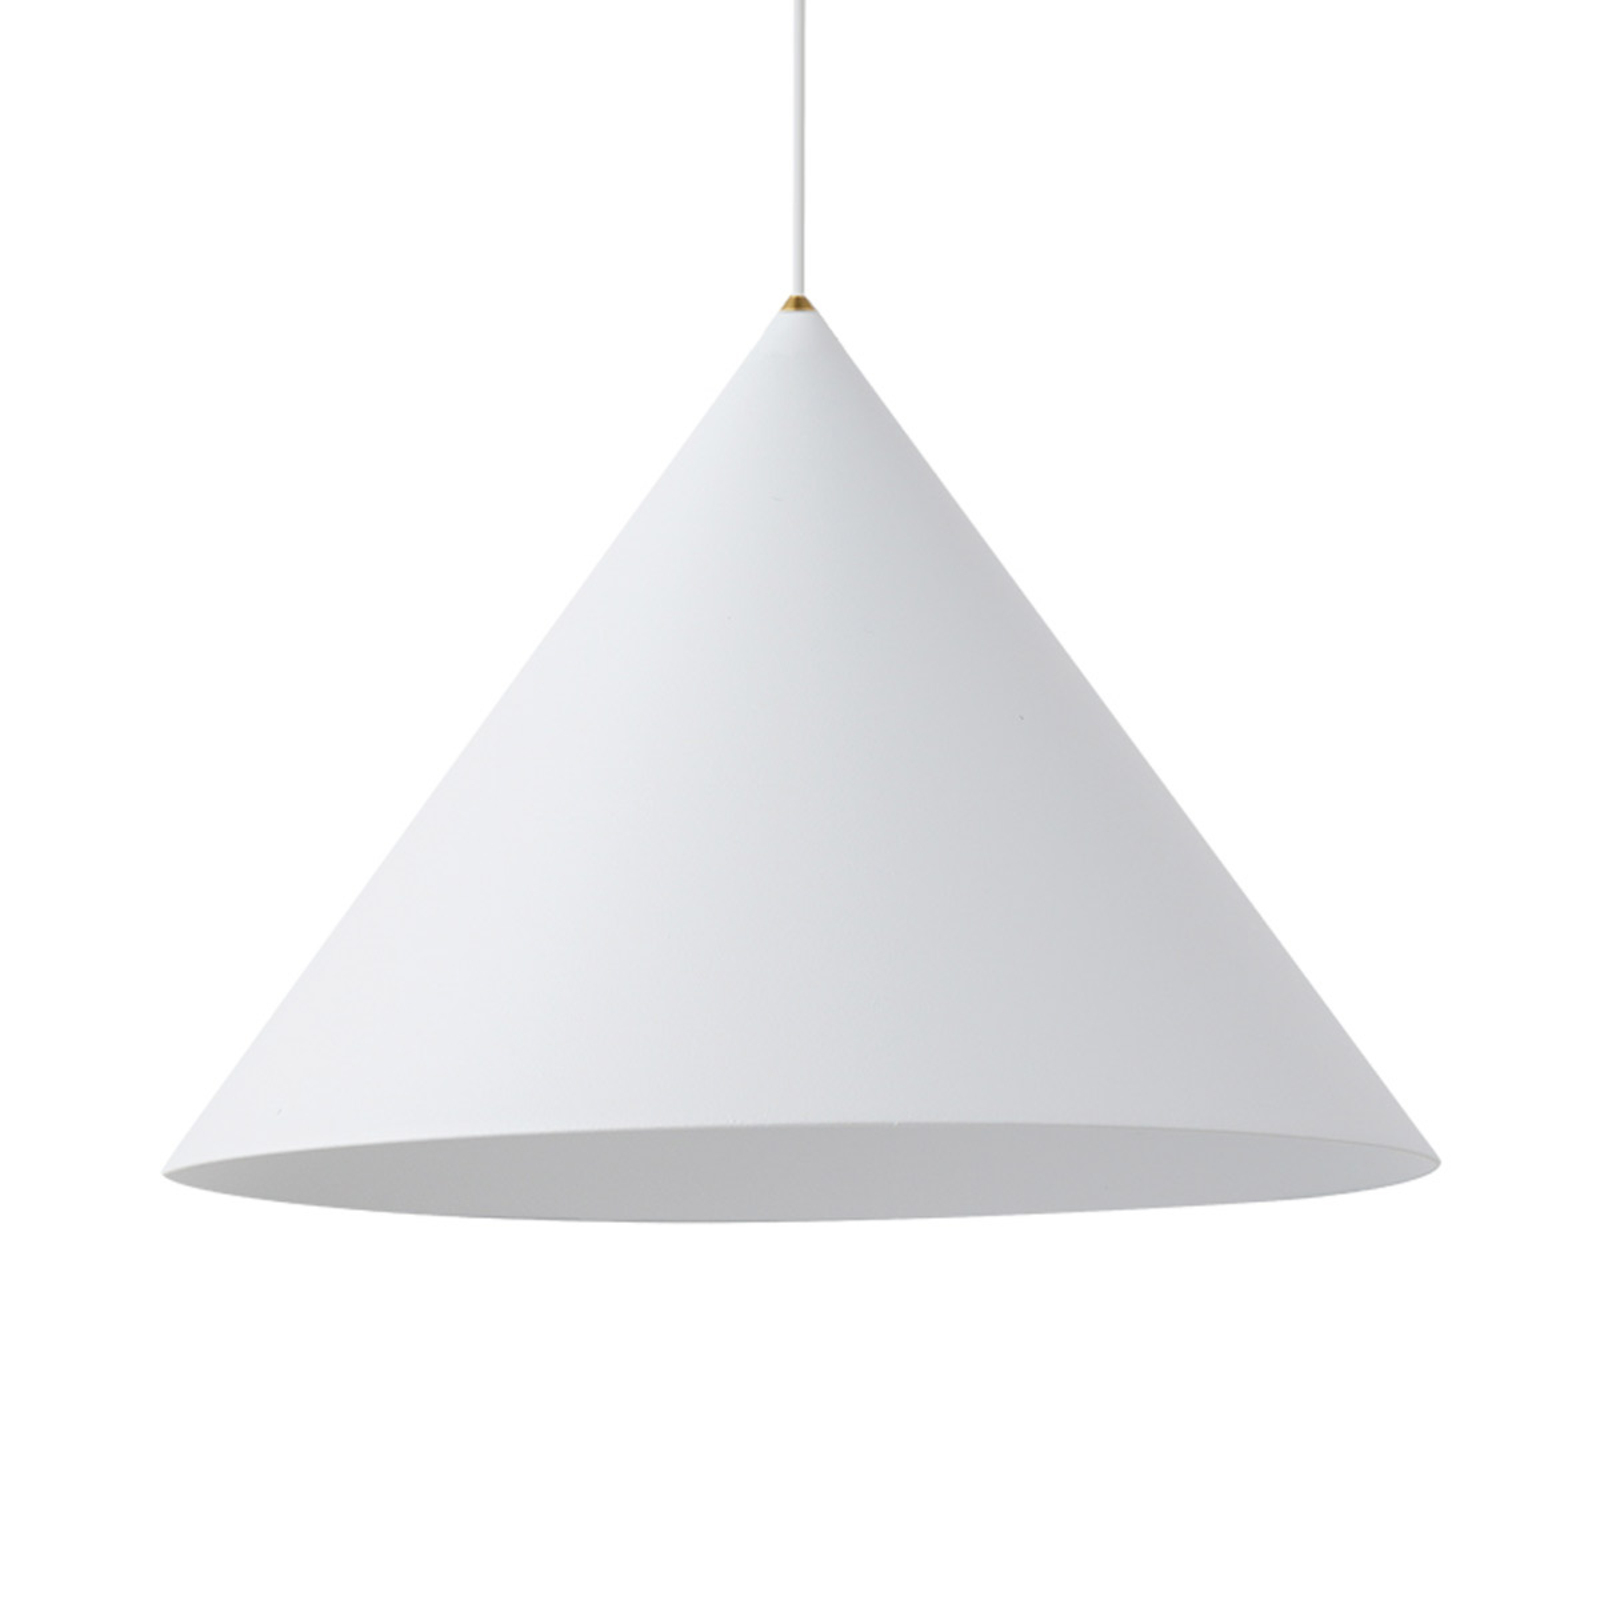 Zenith L viseća svjetiljka izrađena od metala u bijeloj boji